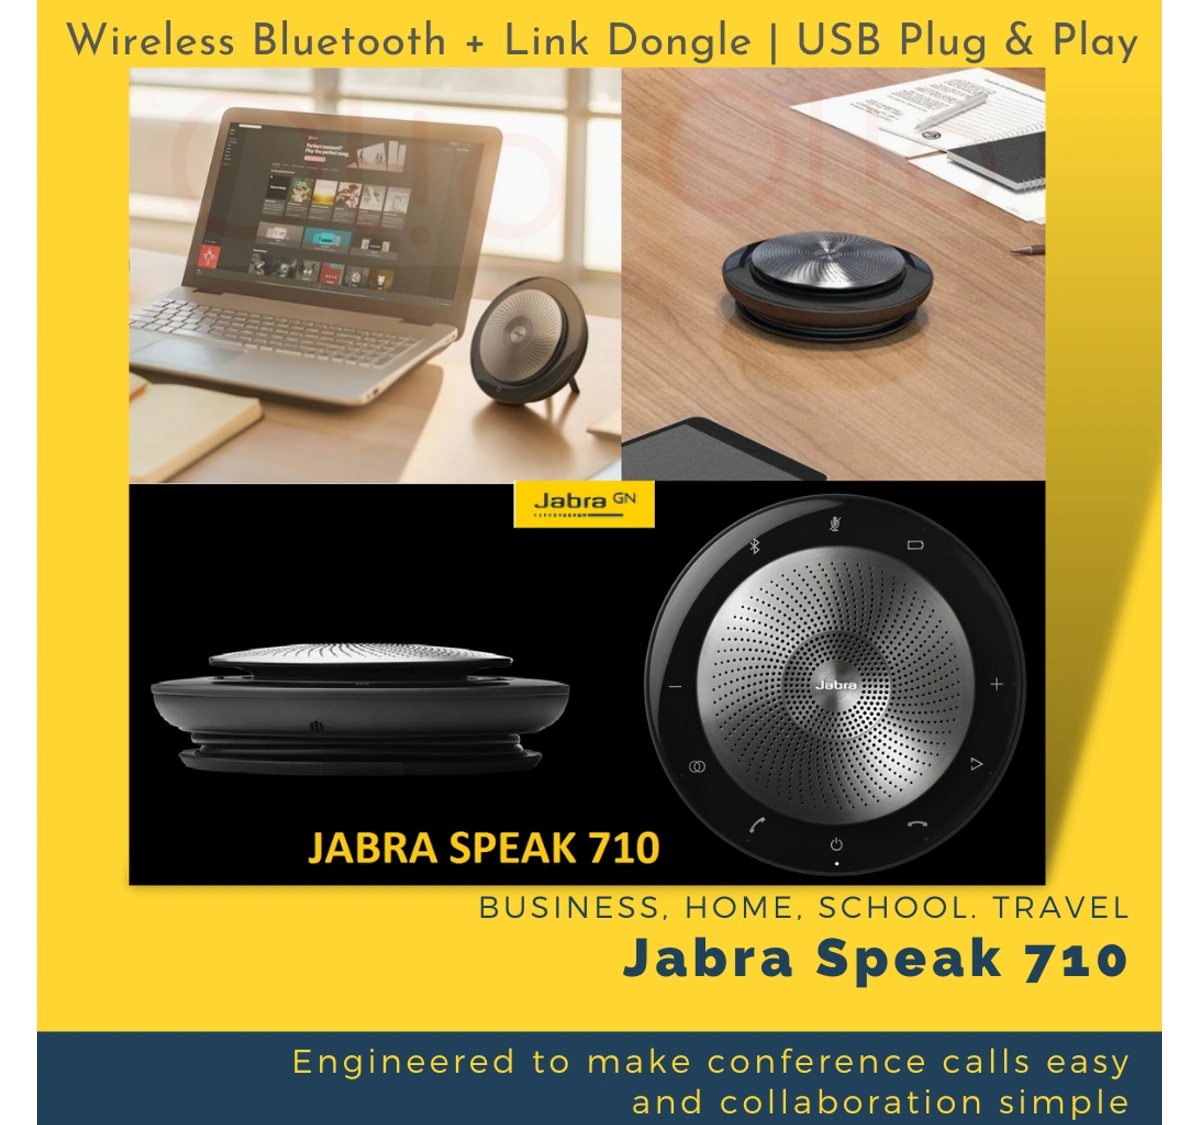 Jabra Speak 710 Portable Speaker for Music and Calls 